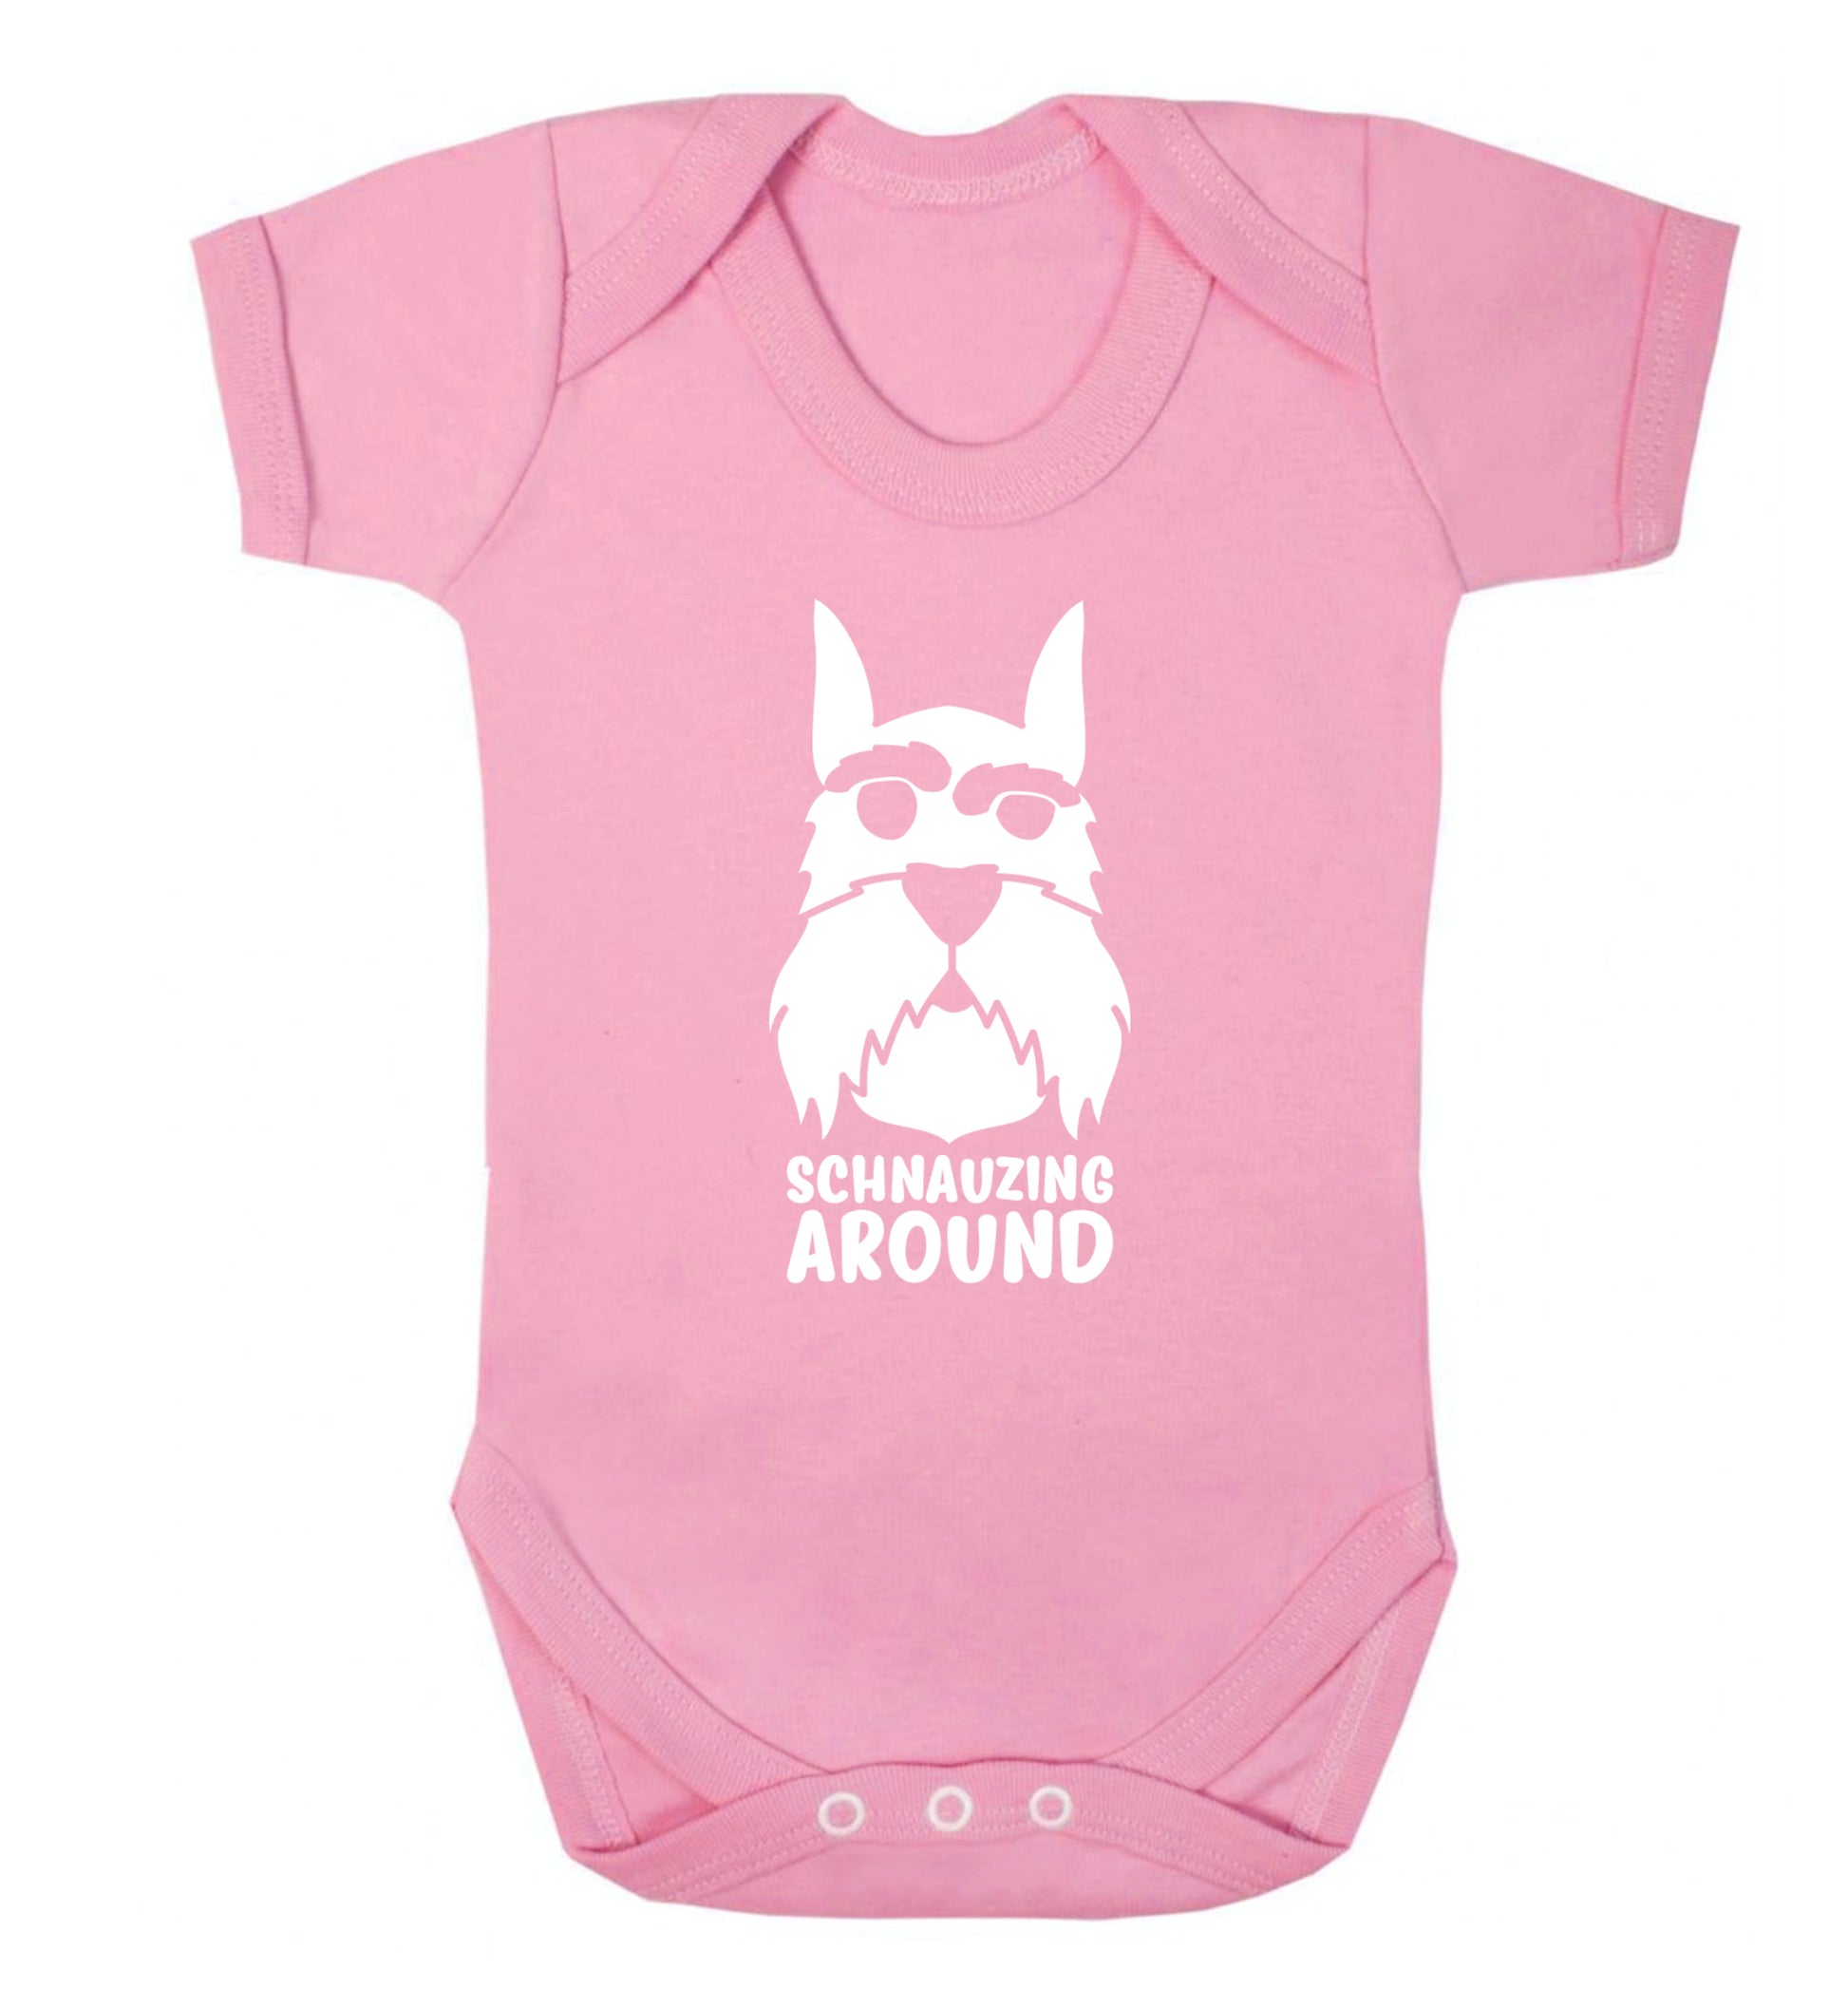 Schnauzing Around Baby Vest pale pink 18-24 months